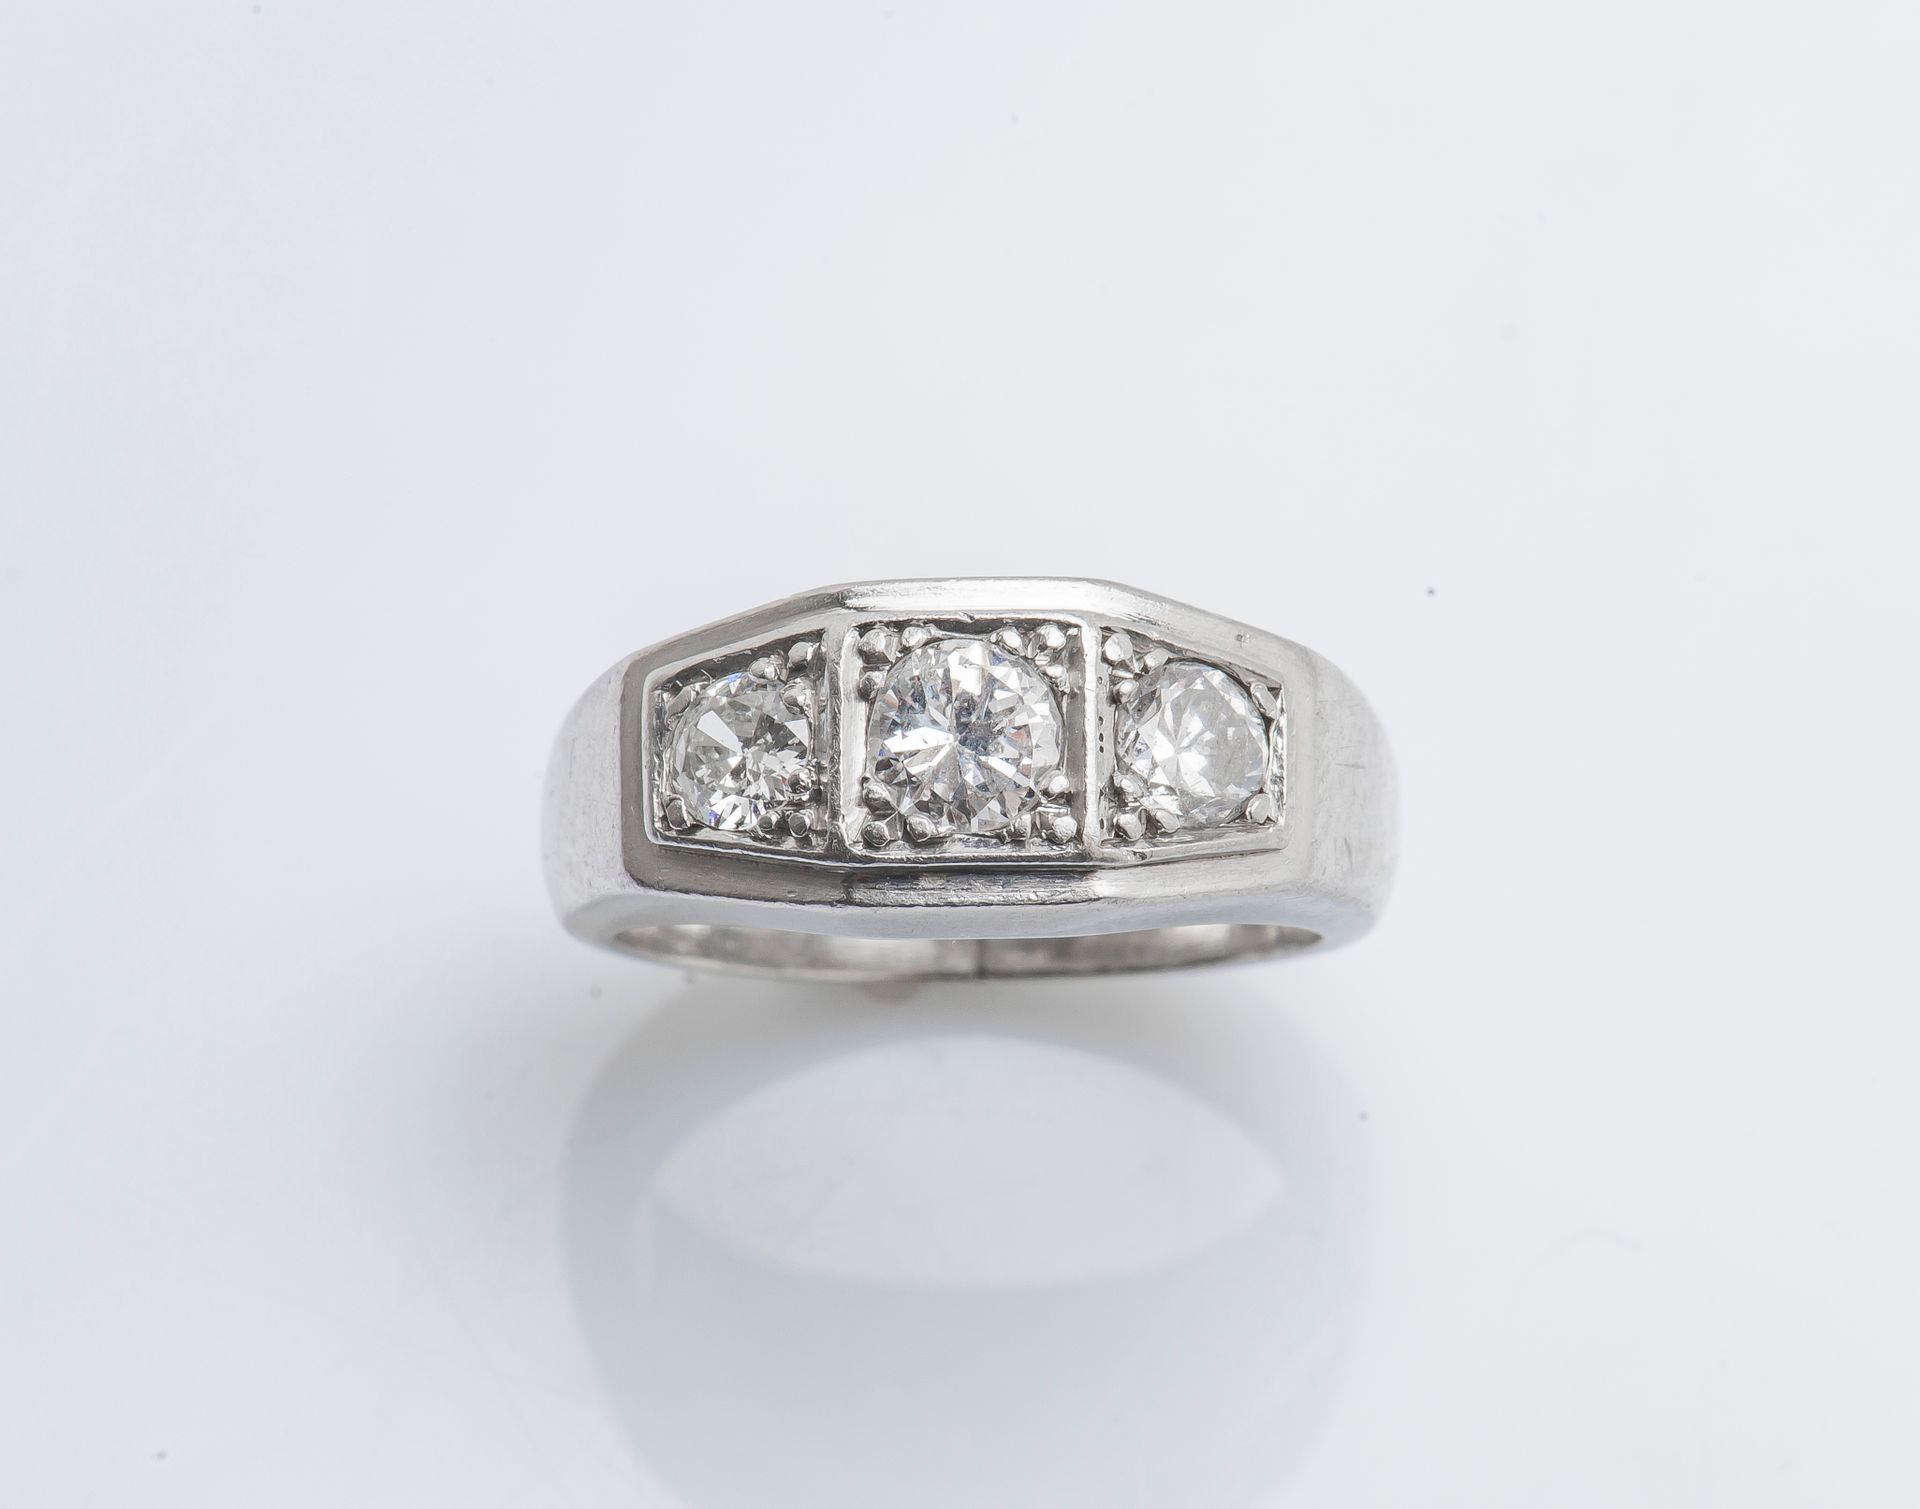 Null 铂金（950千分之一）戒指，侧面镶嵌了三颗老式切割钻石，大约0.30、0.20和0.15克拉。约1930年。

手指尺寸 : 47/48 毛重 : 1&hellip;